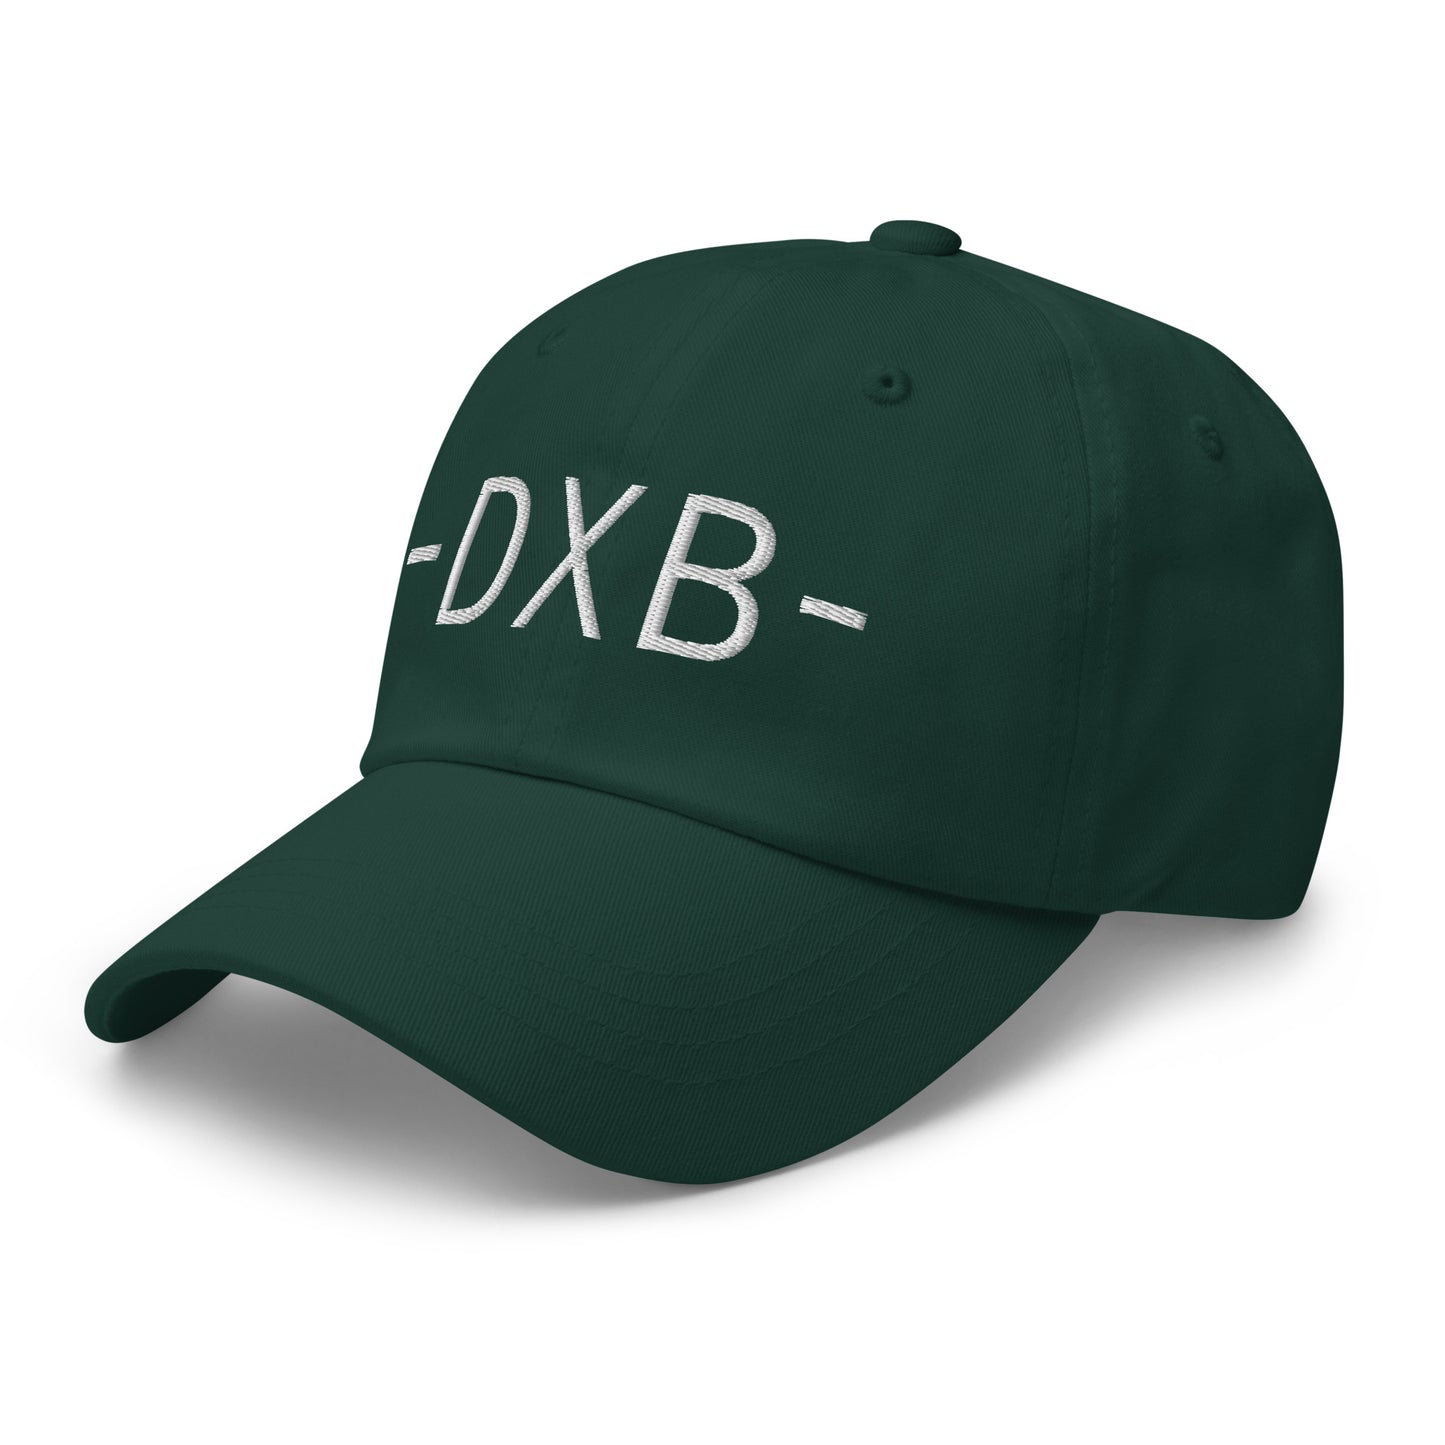 Souvenir Baseball Cap - White • DXB Dubai • YHM Designs - Image 18